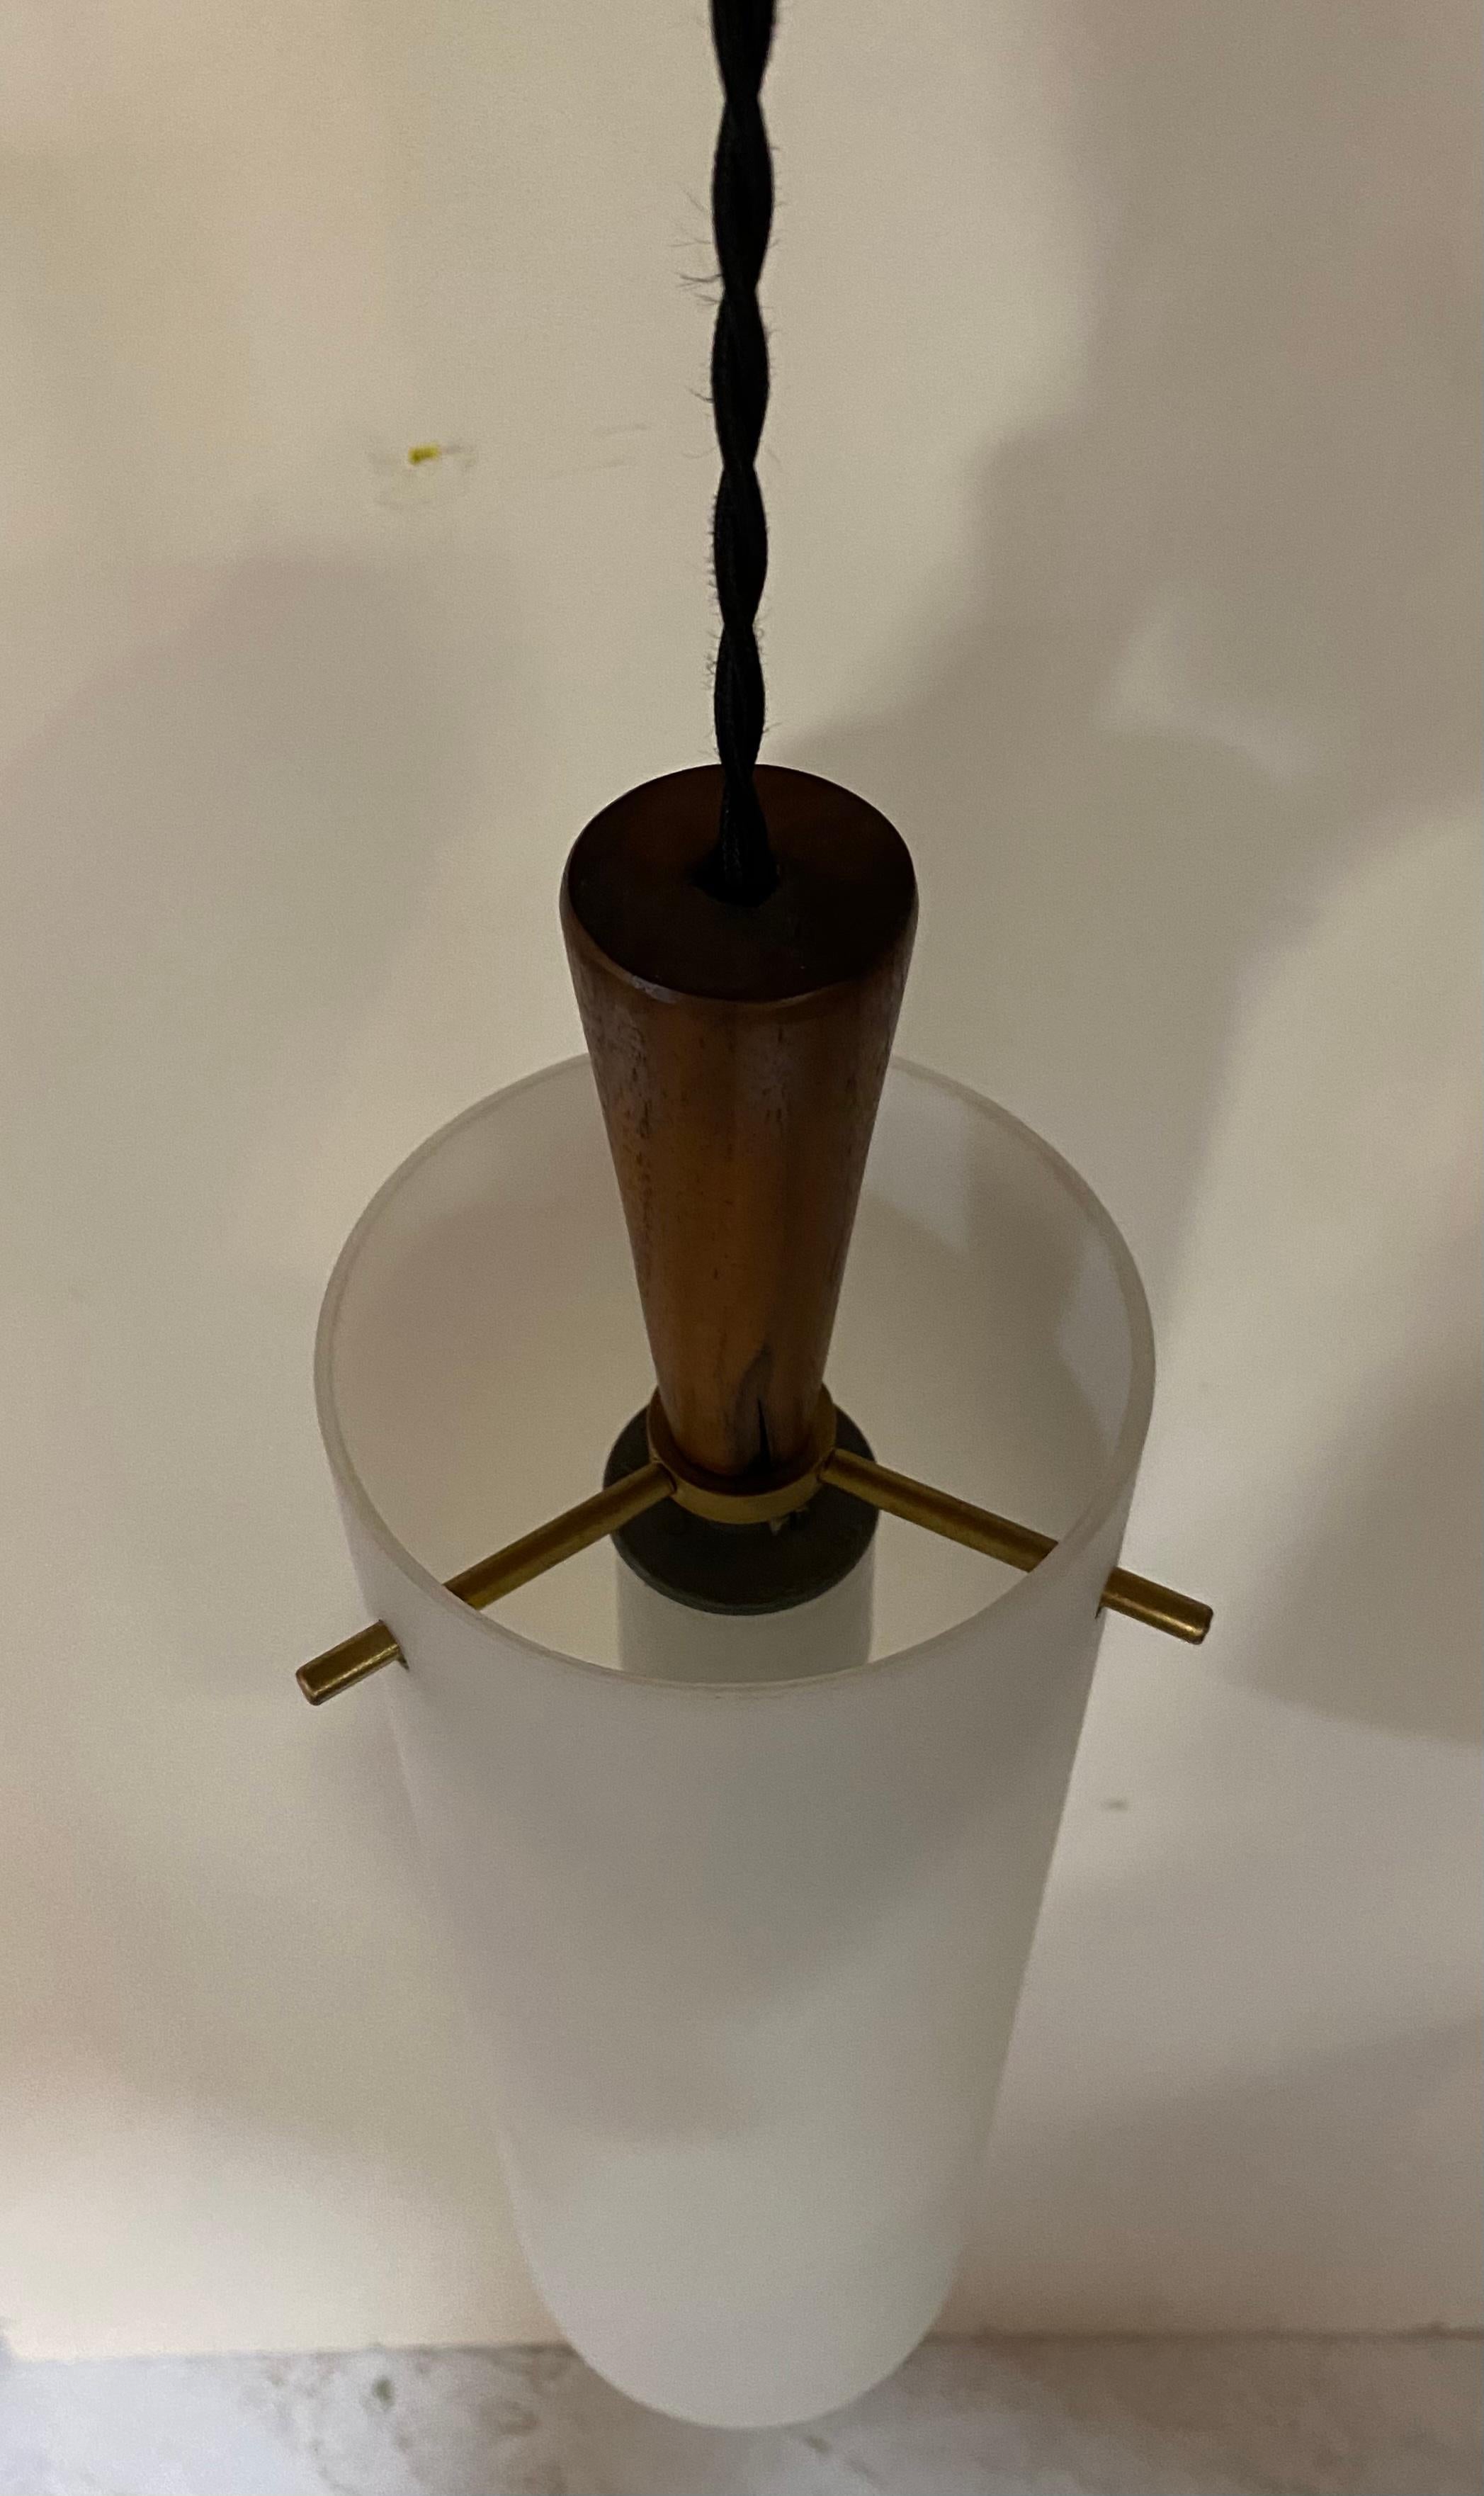 Leuchte von Hadeland Glasswverk, Norwegen, mit zylindrischem Milchglasschirm, Messingstiften und Nussbaumkappe, um 1950.

Nicht signiert, aber umfassend dokumentiert. Für eine Standard-US-Glühbirne, maximal 60 Watt.

Abmessungen: 4 Zoll B x 14,5